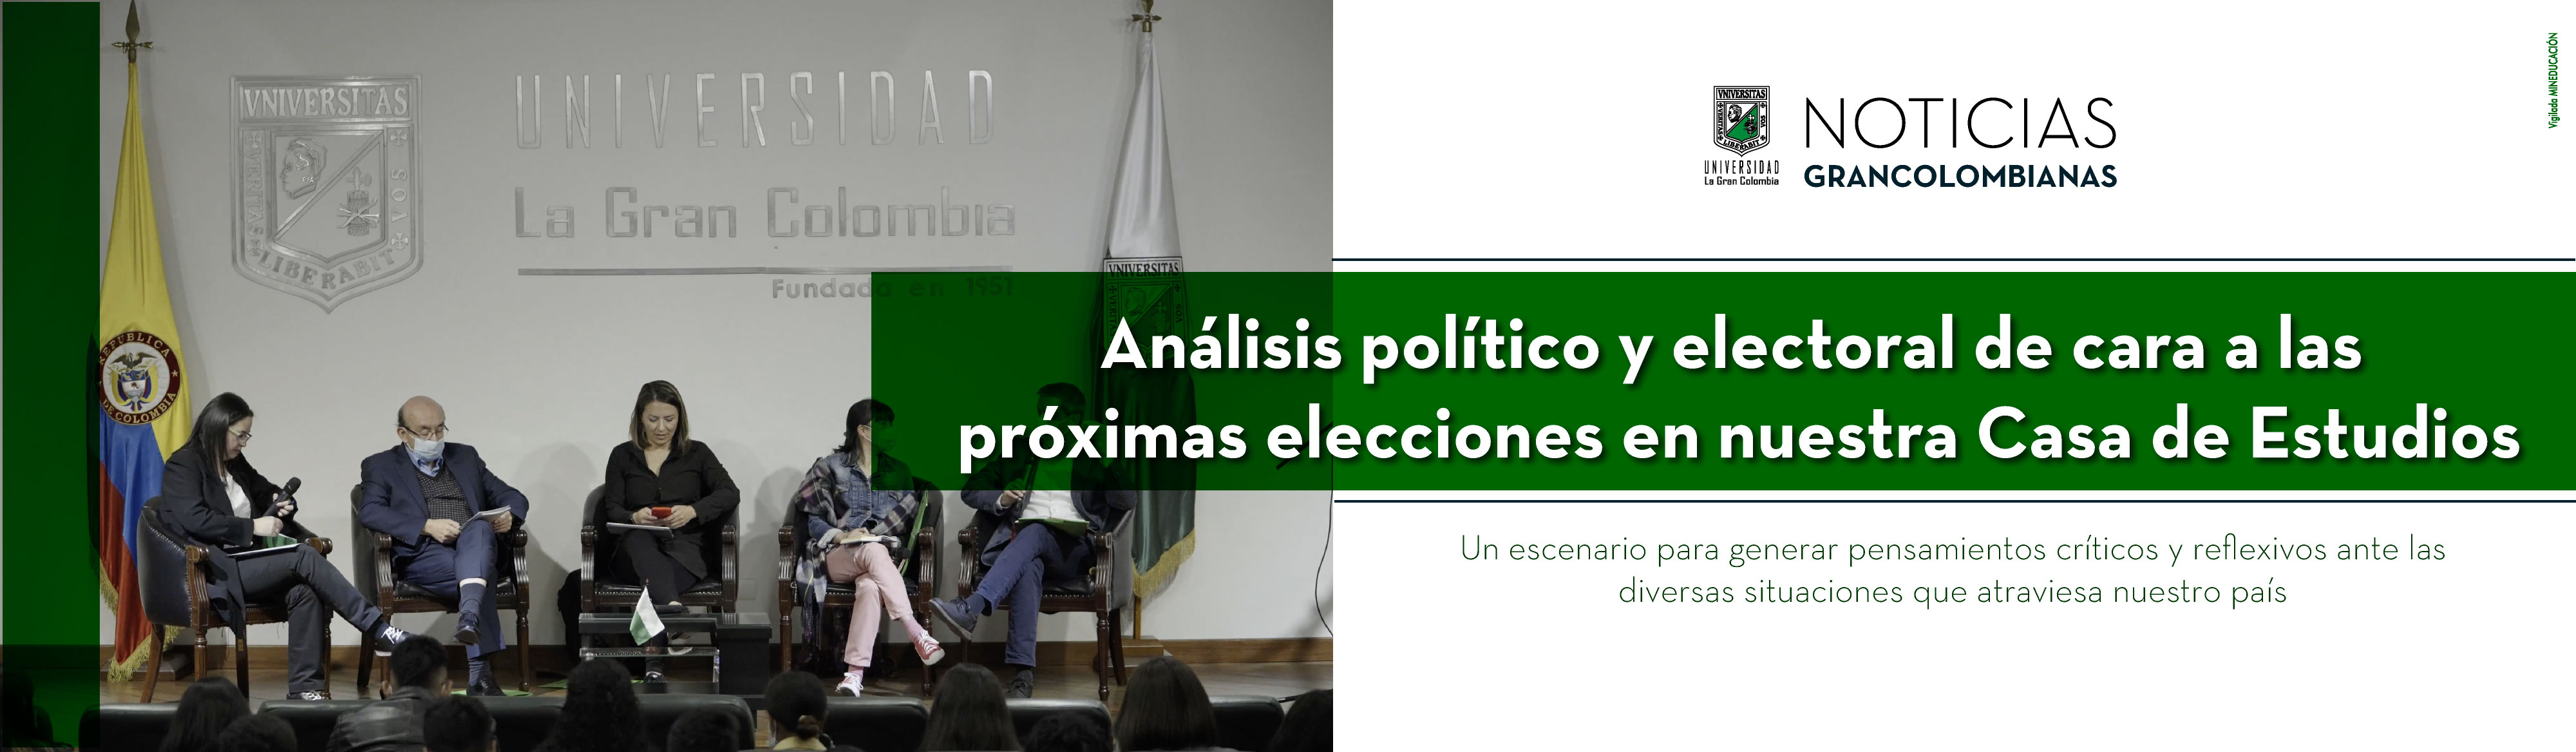 Análisis político y electoral de cara a las próximas elecciones en nuestra Casa de Estudios